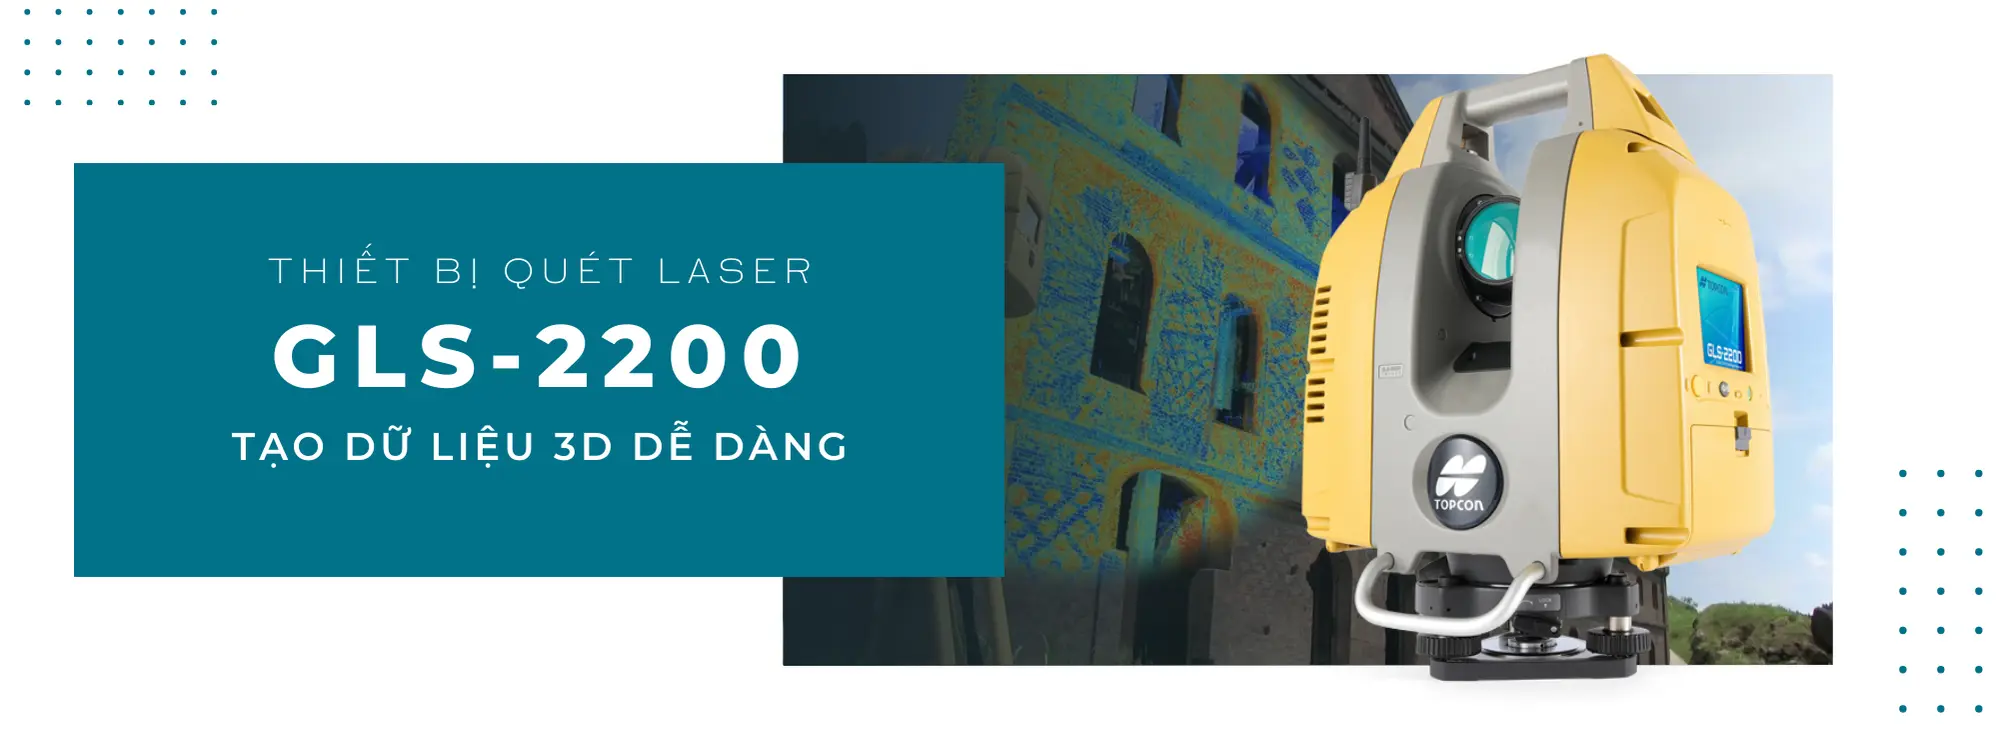 GLS 2200 topcon banner landingpage 2 - GLS-2200 | Thiết bị quét laser